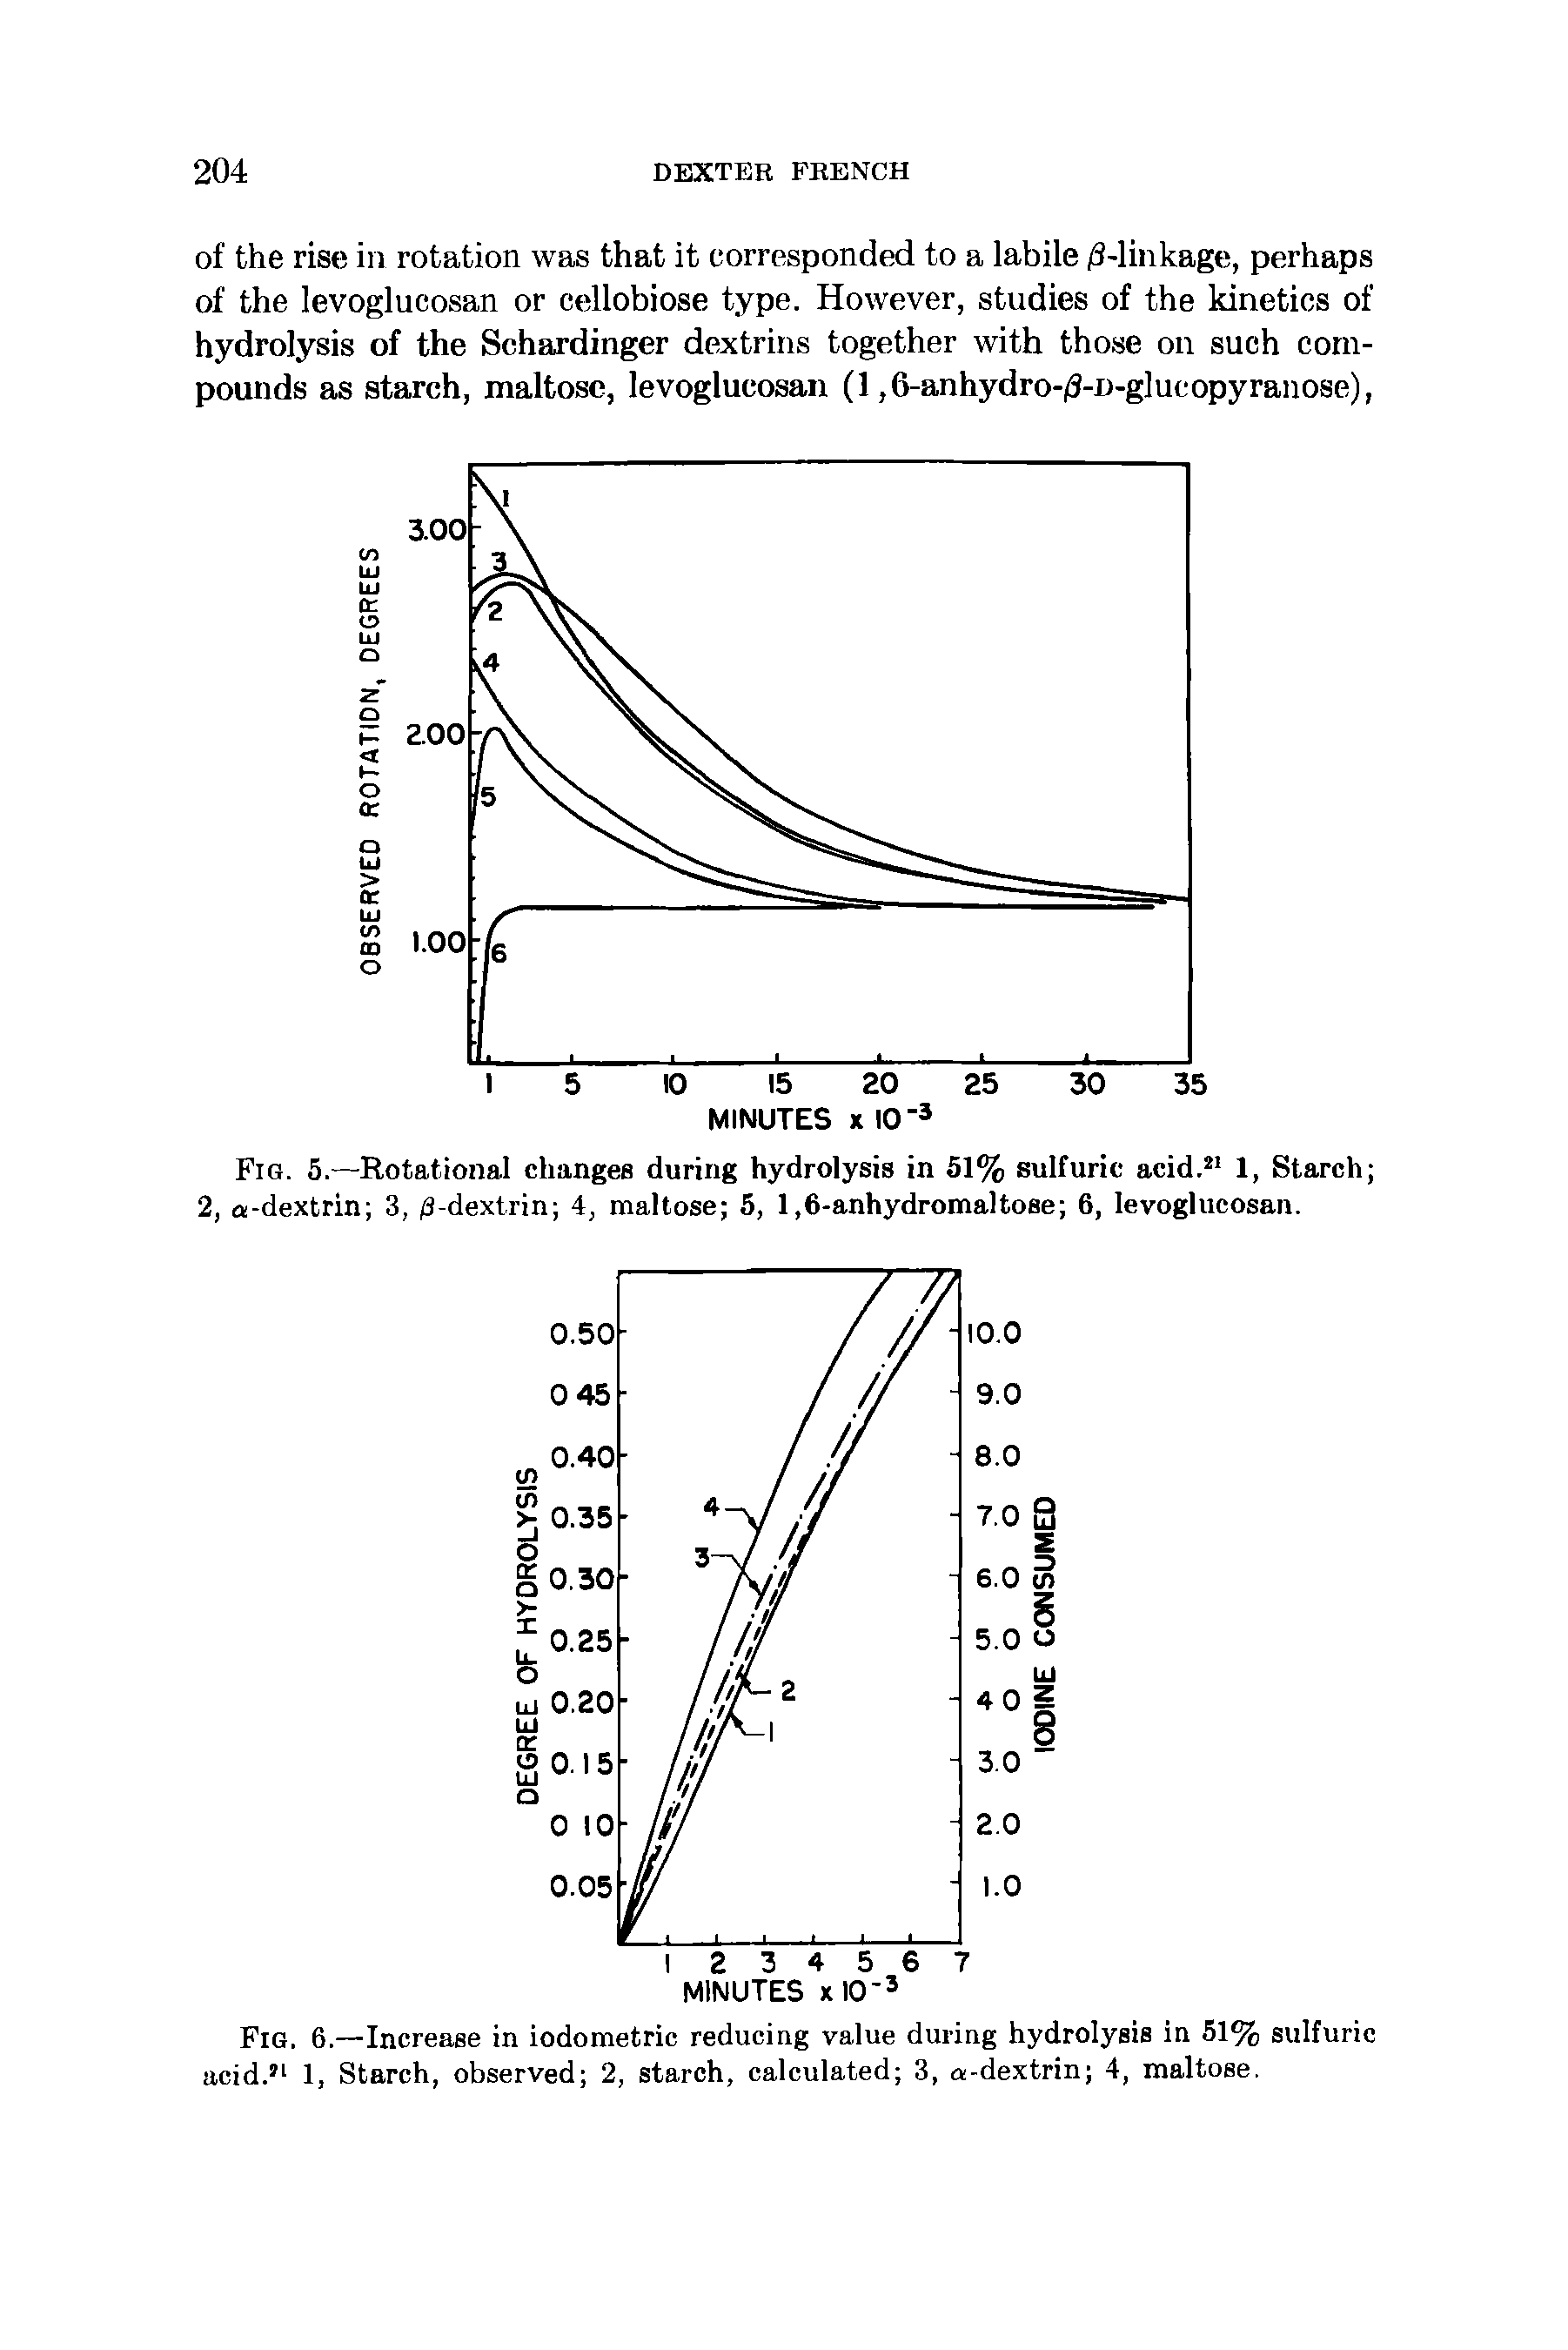 Fig. 5.—Rotational changes during hydrolysis in 51% sulfuric acid. 1, Starch 2, Qi-dextrin 3, /3-dextrin 4, maltose 5, 1,6-anhydromaltose 6, levoglucosan.